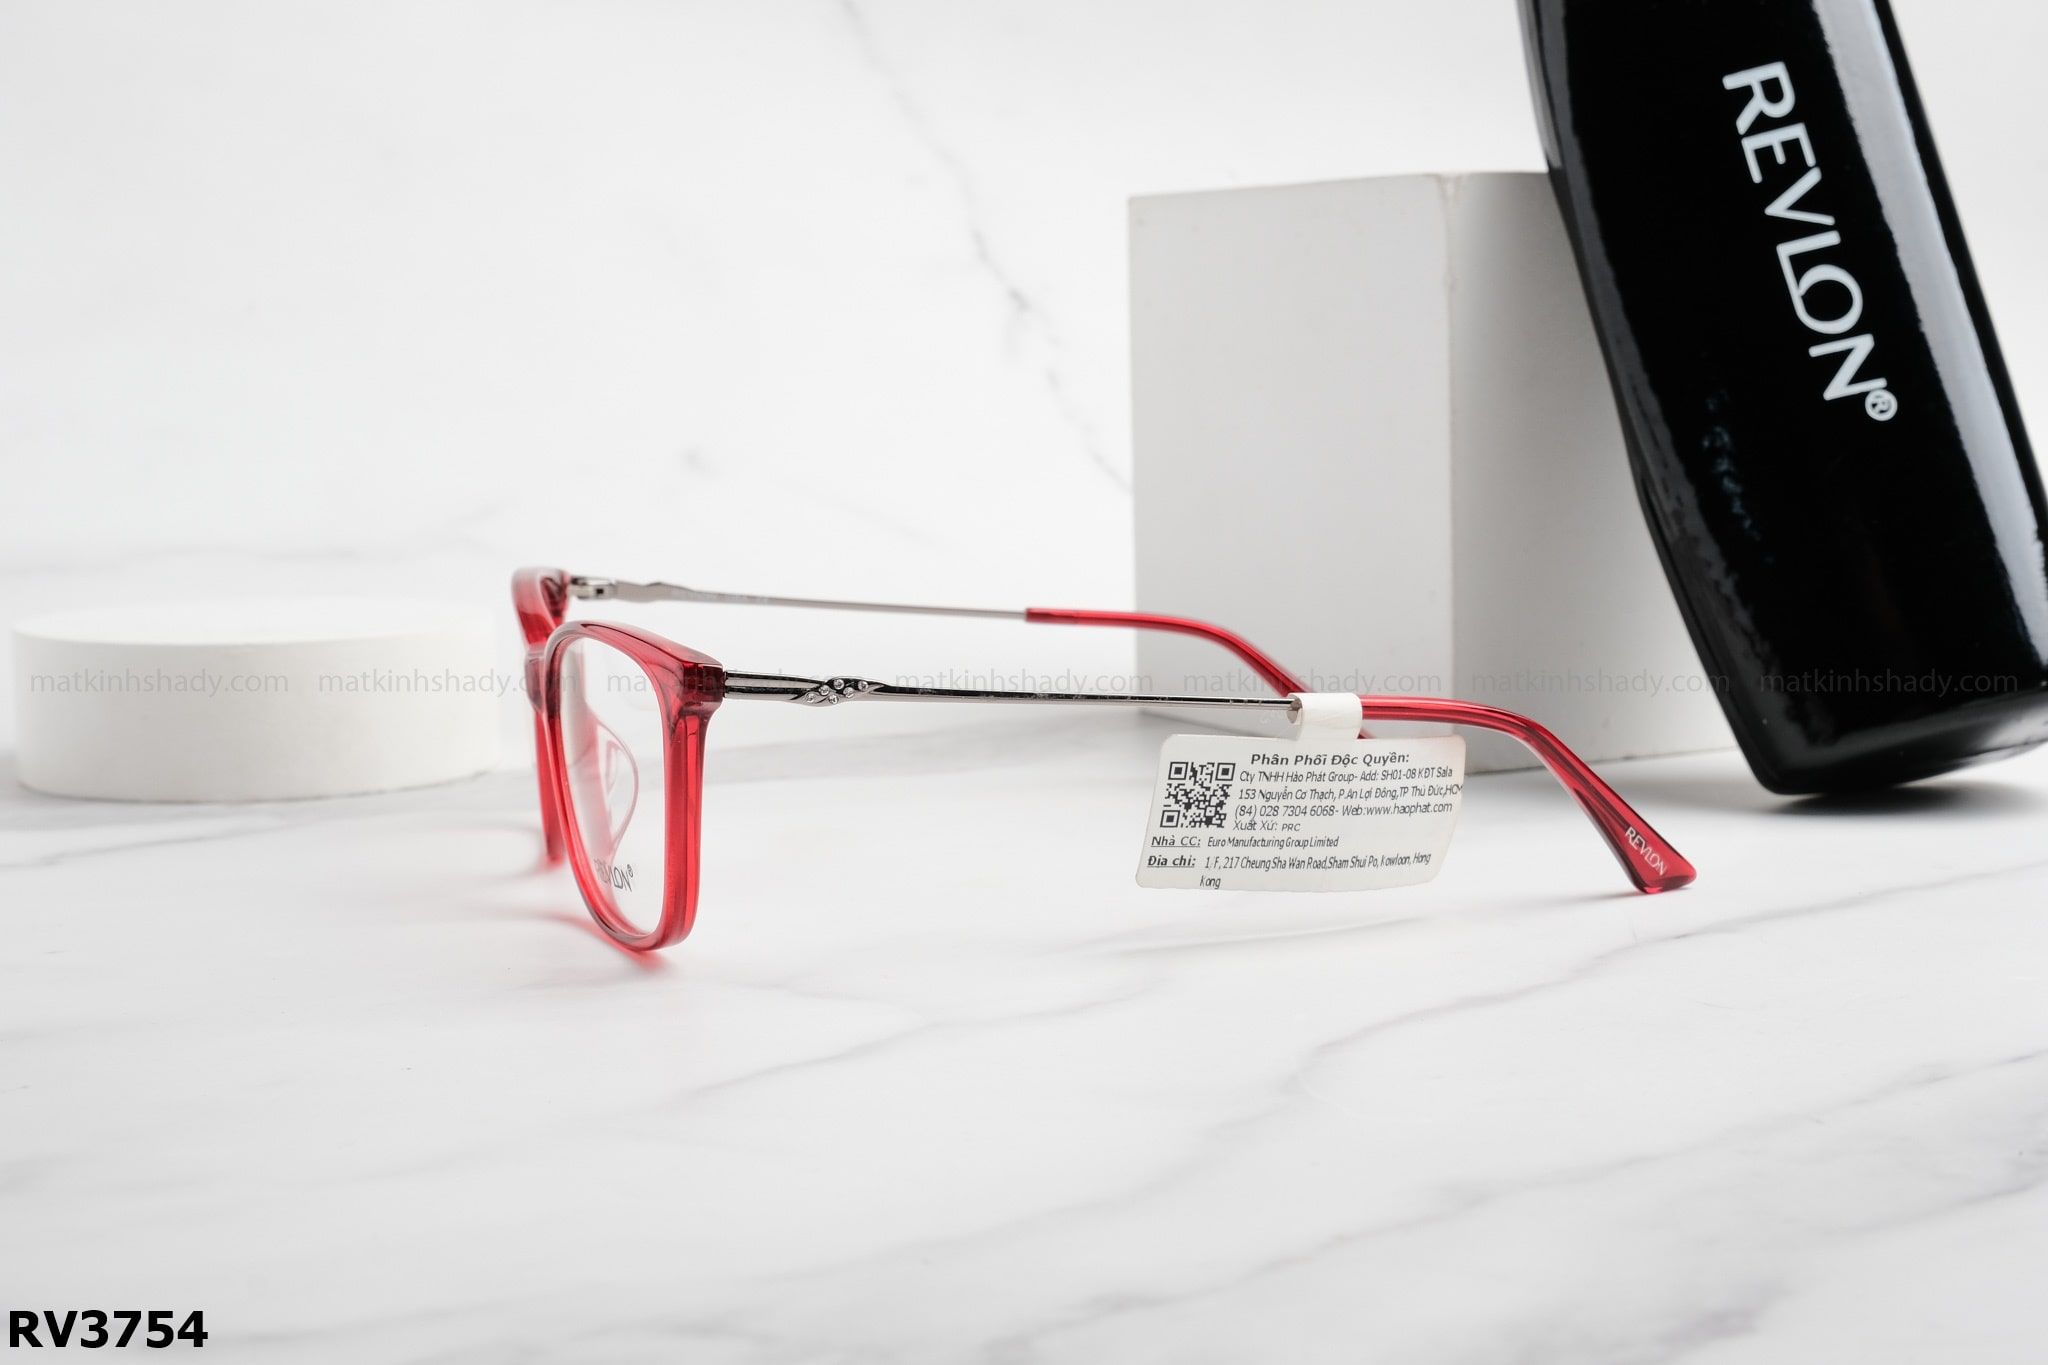  Revlon Eyewear - Glasses - RV3754 